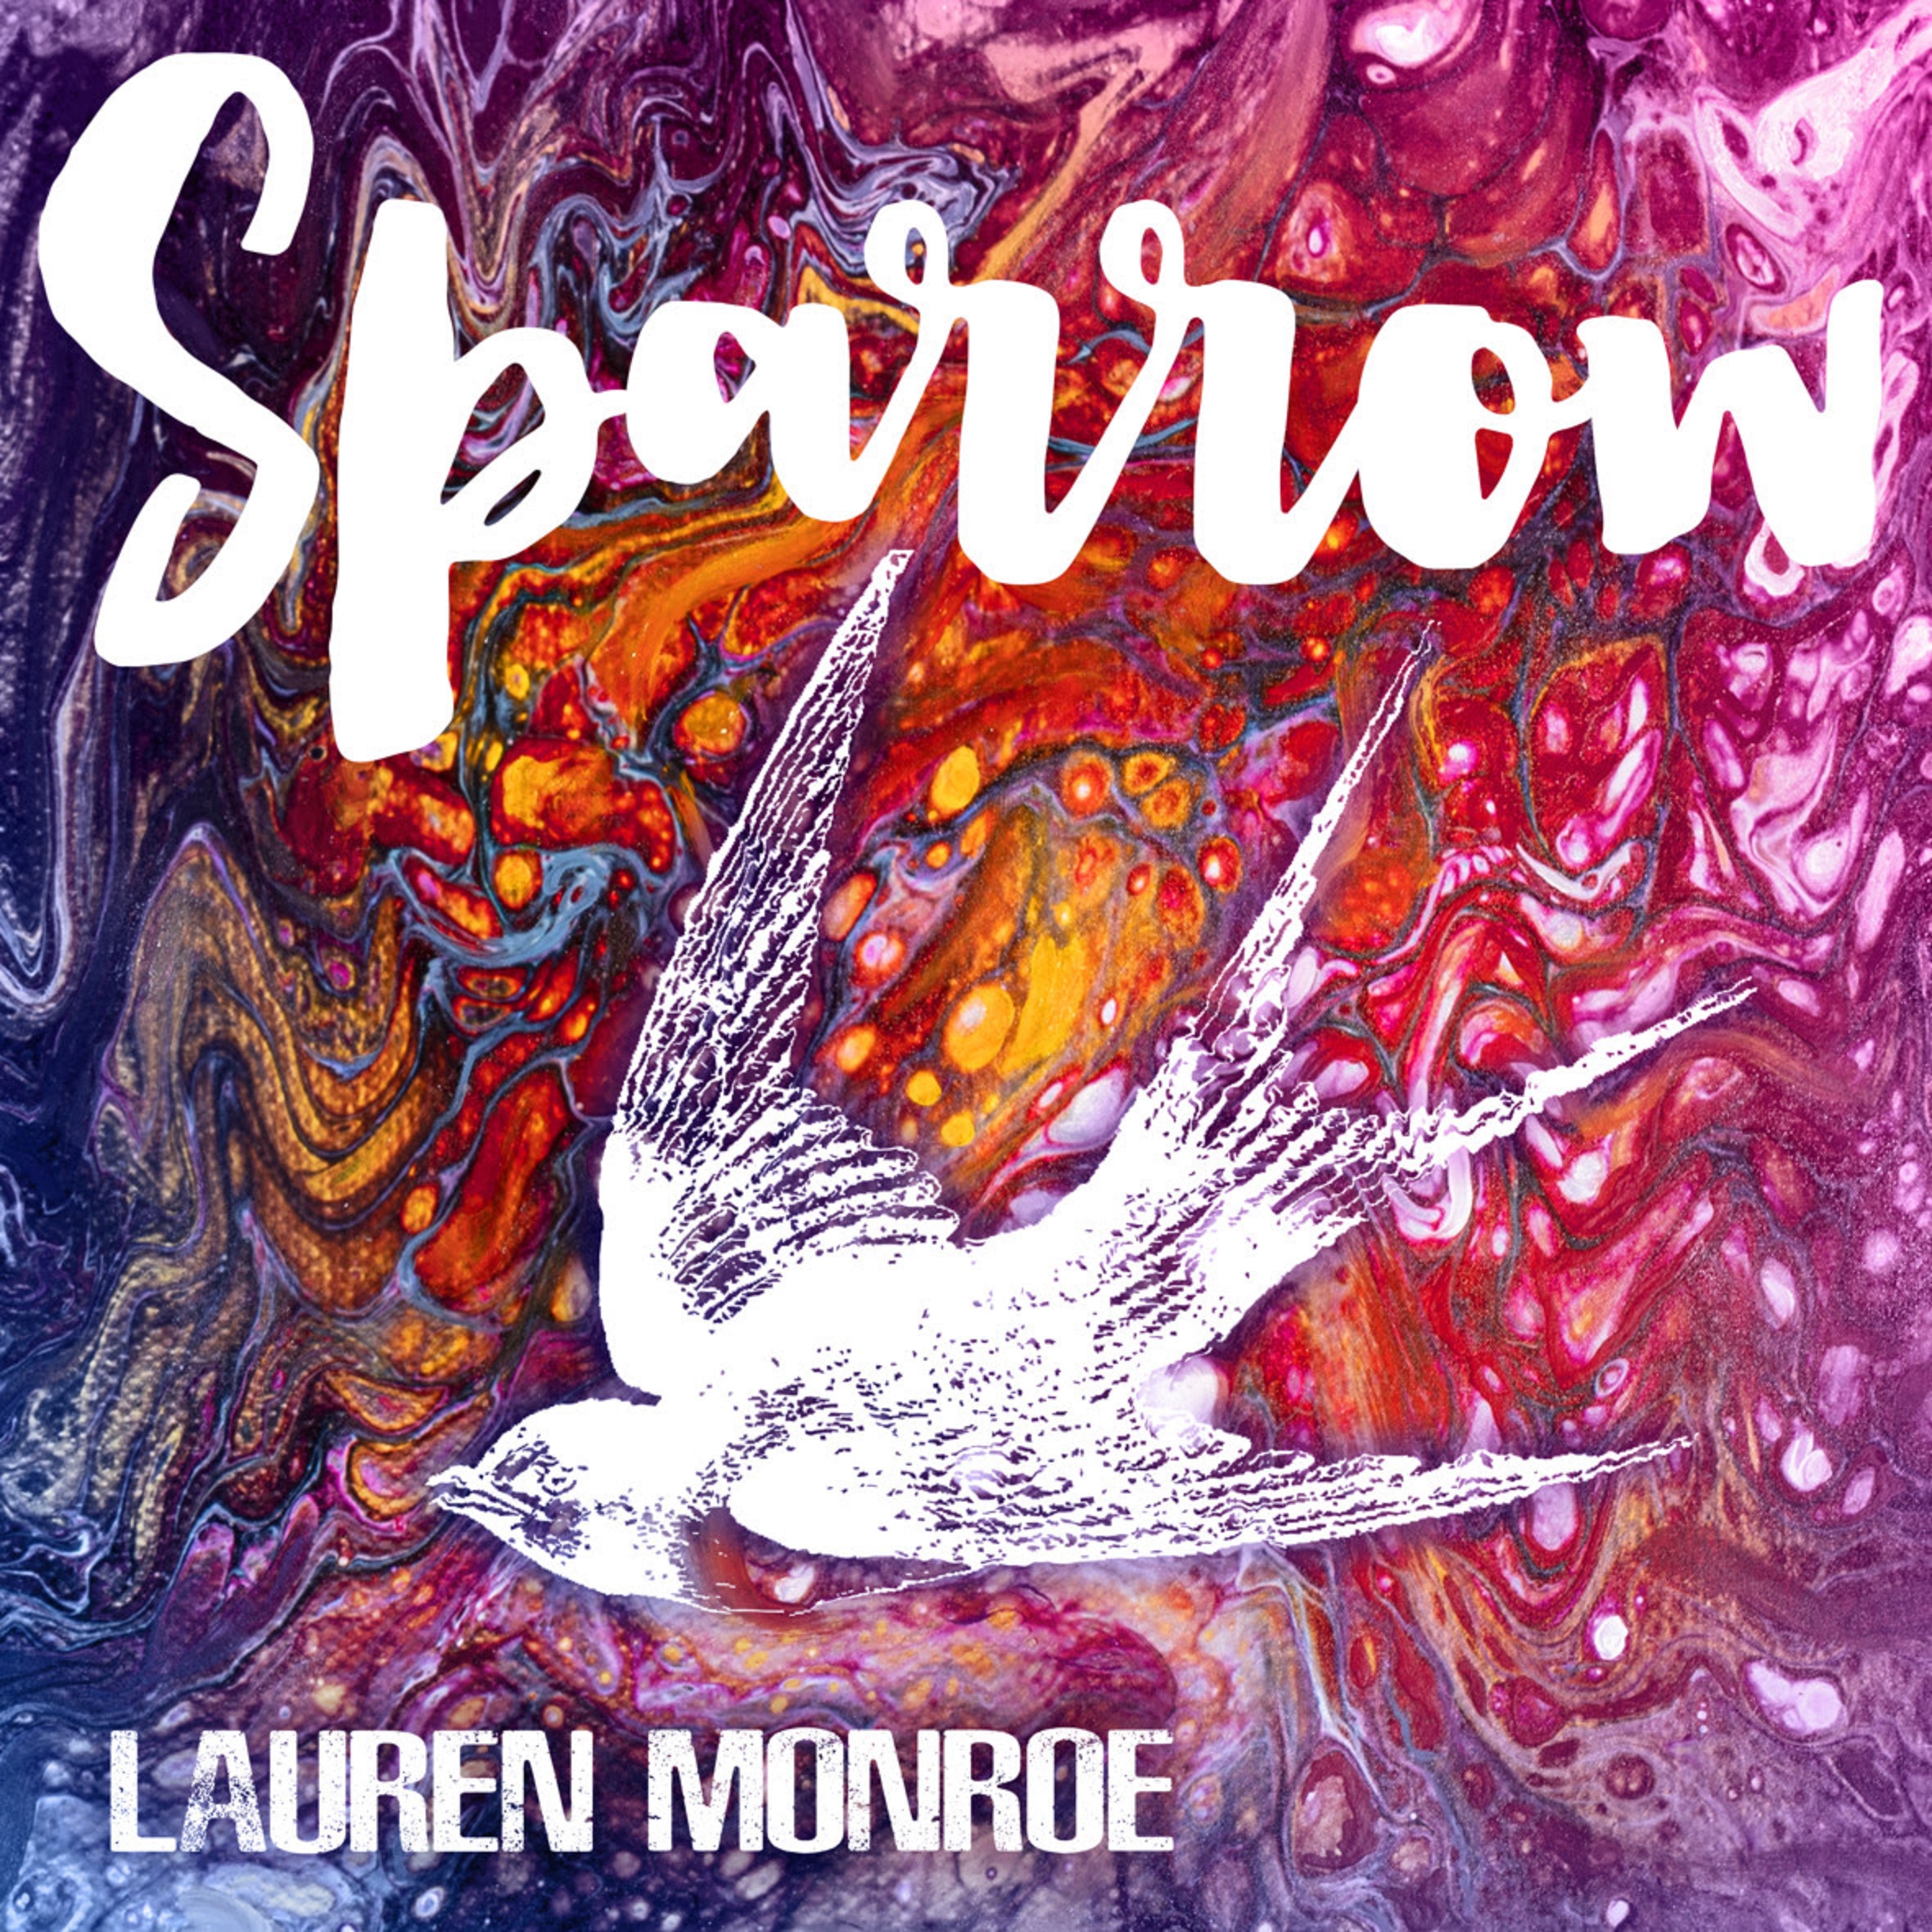 LAUREN MONROE releases new single, "SPARROW" Video coming soon